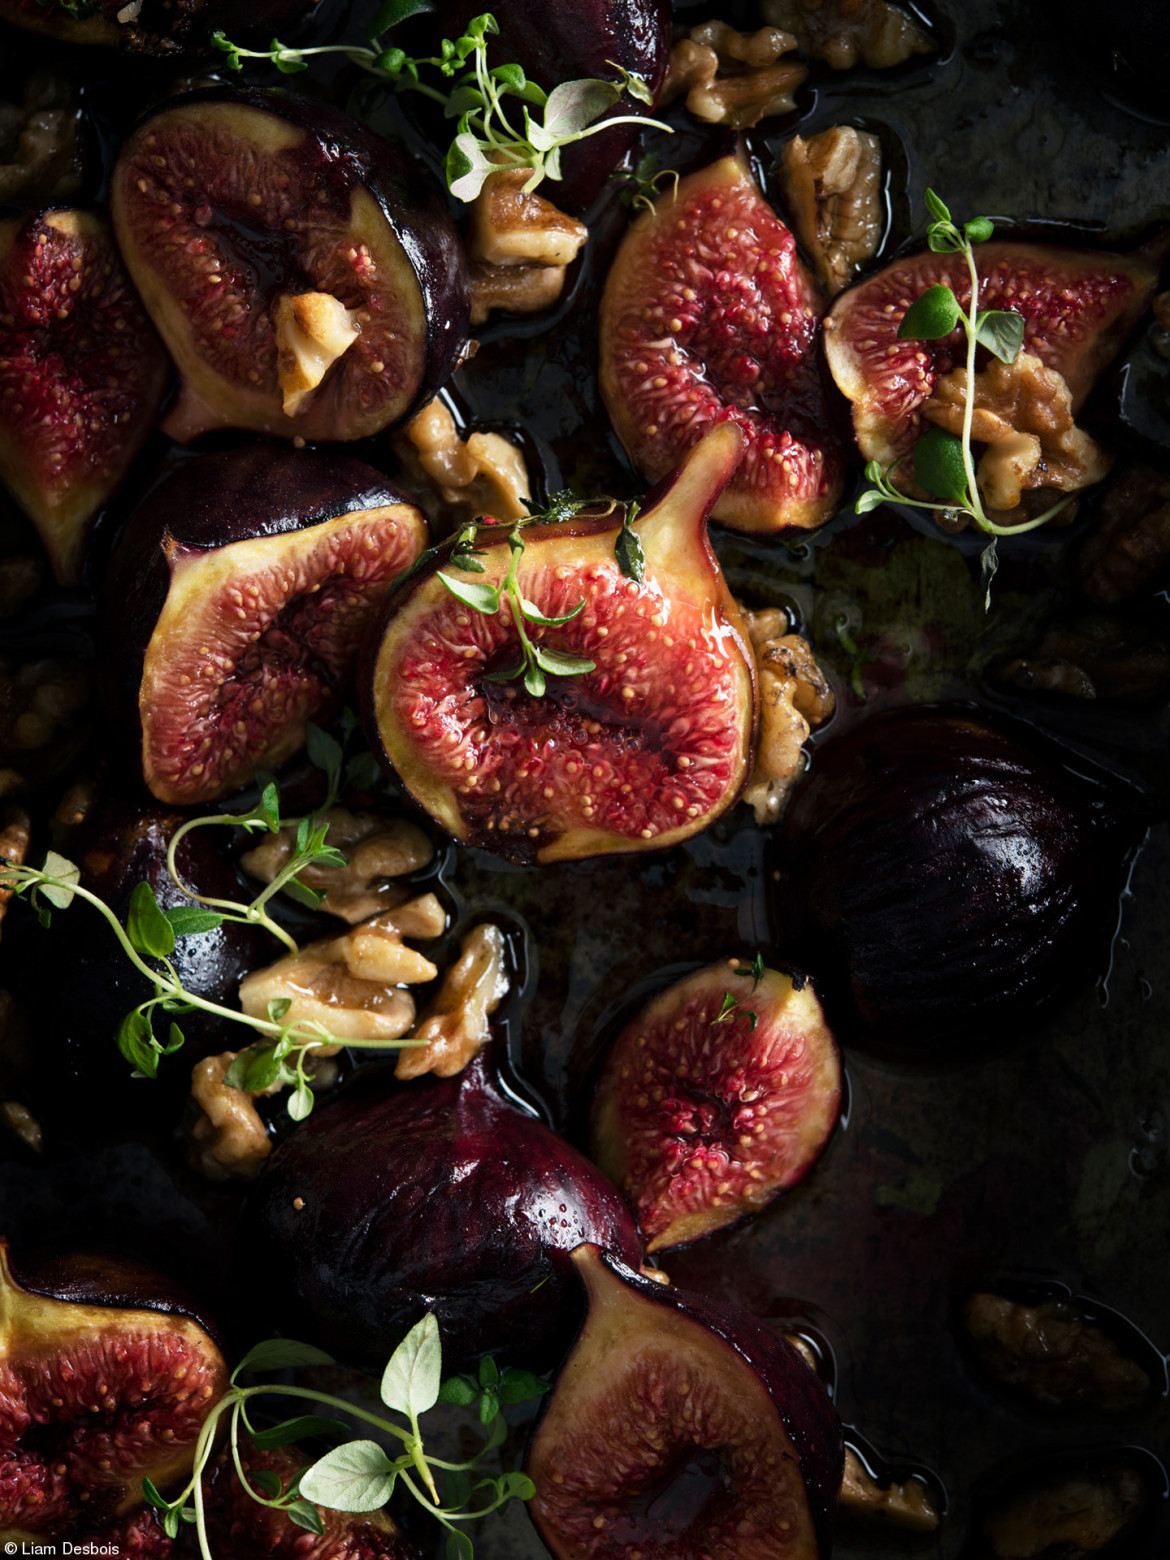 fot. Liam Desbois, "Baked Figs", 1. miejsce w kategorii Marks & Spencer Food Portraiture